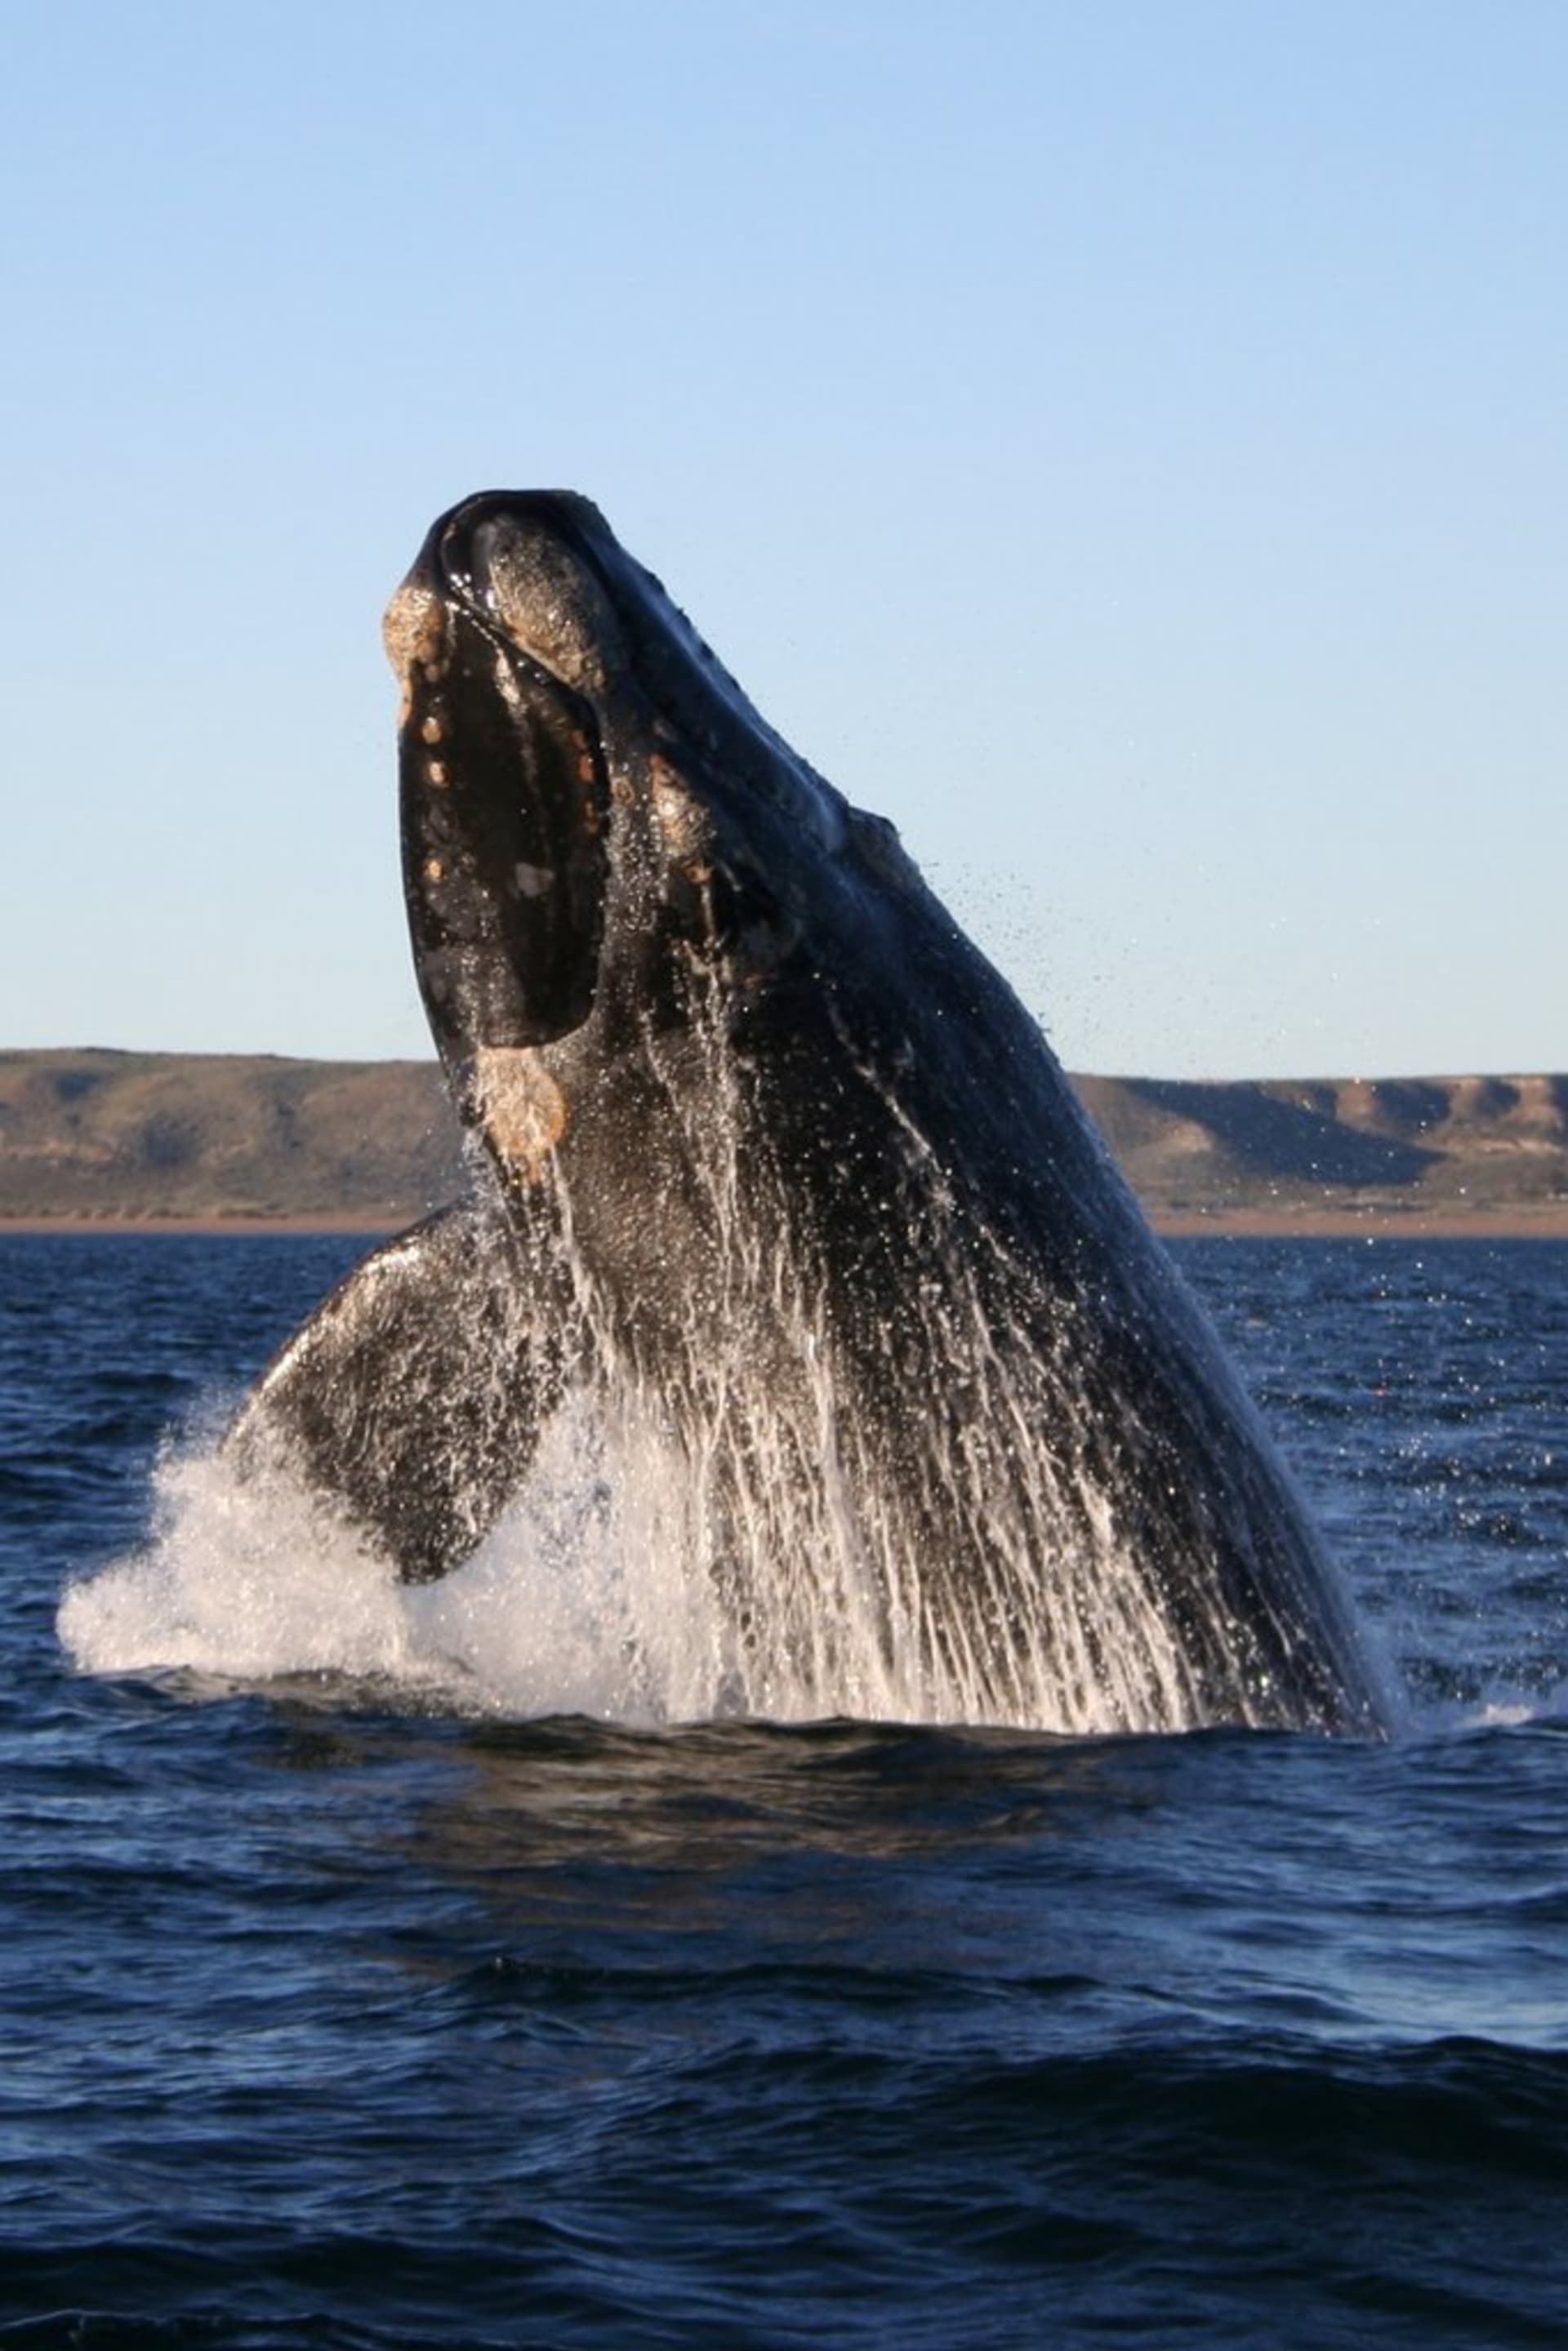 Velryby černé se stávají obětí nucené migrace za potravou. Jejich život končí předčasně kvůli odhozenému rybářskému vybavení či srážkám s loděmi.